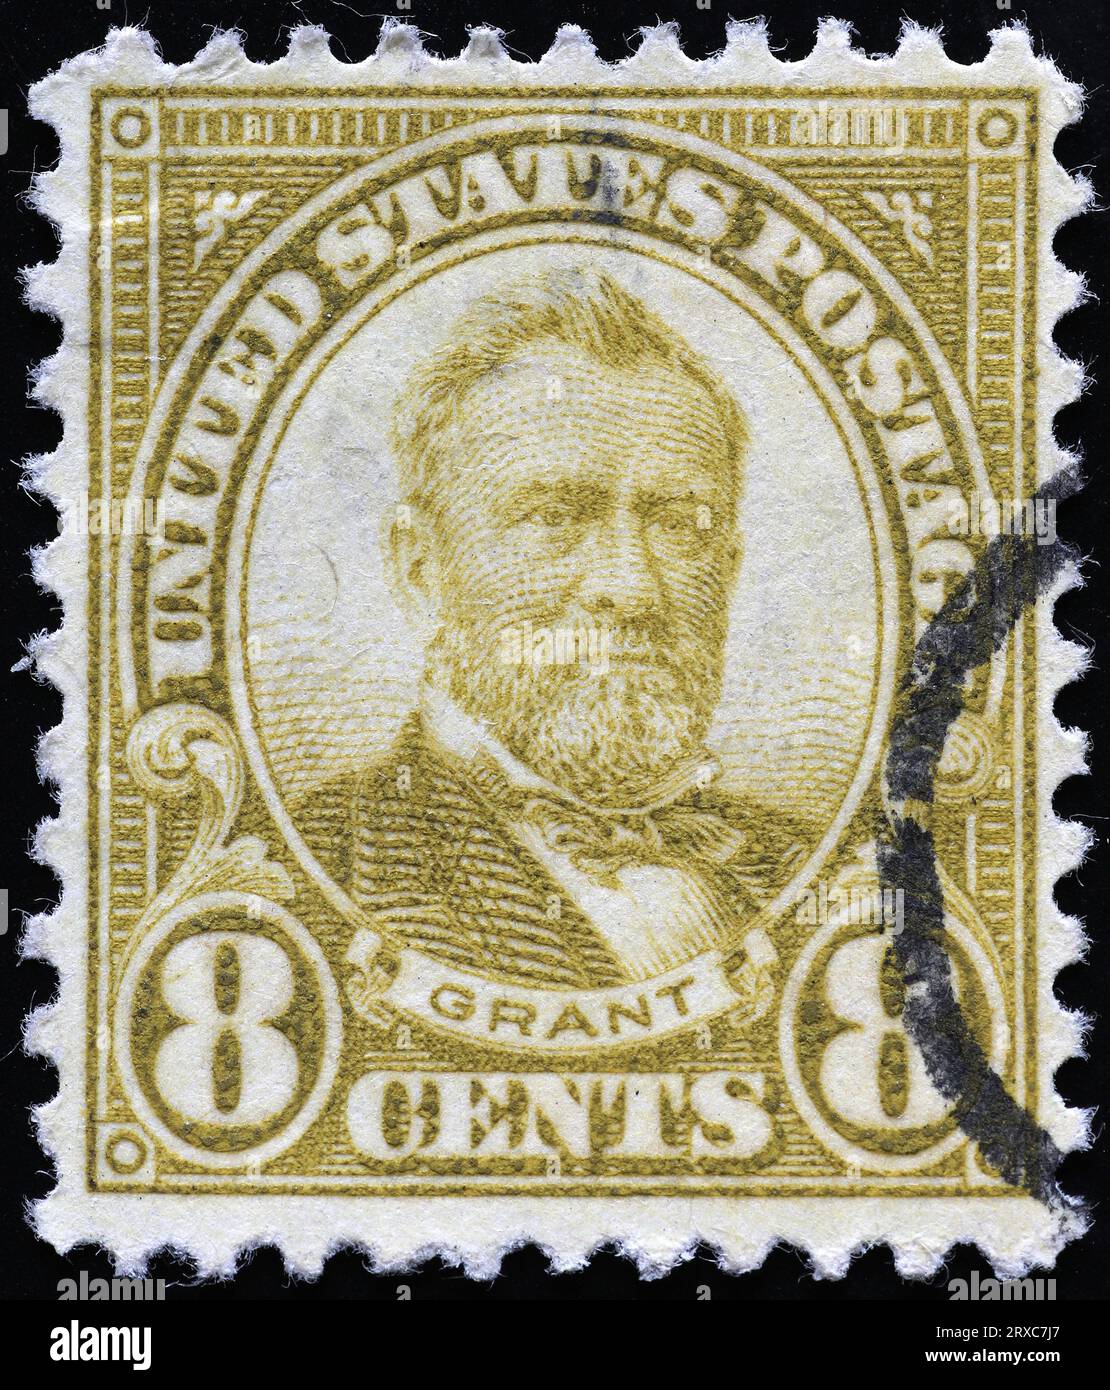 Il presidente DEGLI STATI UNITI Ulysses S.Grant sul vecchio francobollo Foto Stock